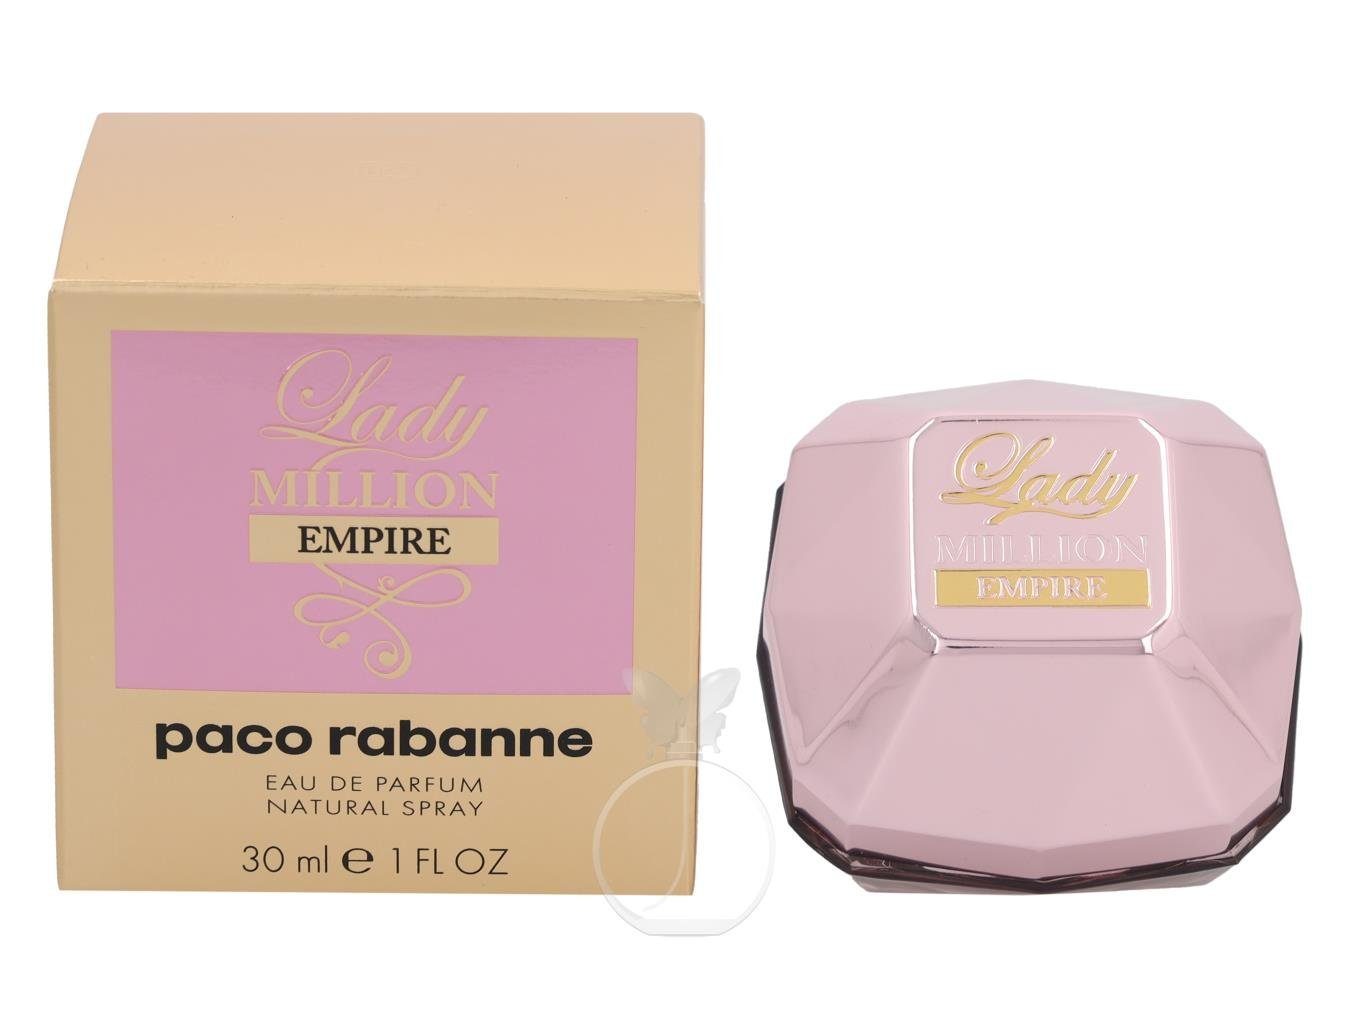 paco rabanne Extrait Parfum paco de 30 Million ml Empire rabanne Lady Parfum Eau